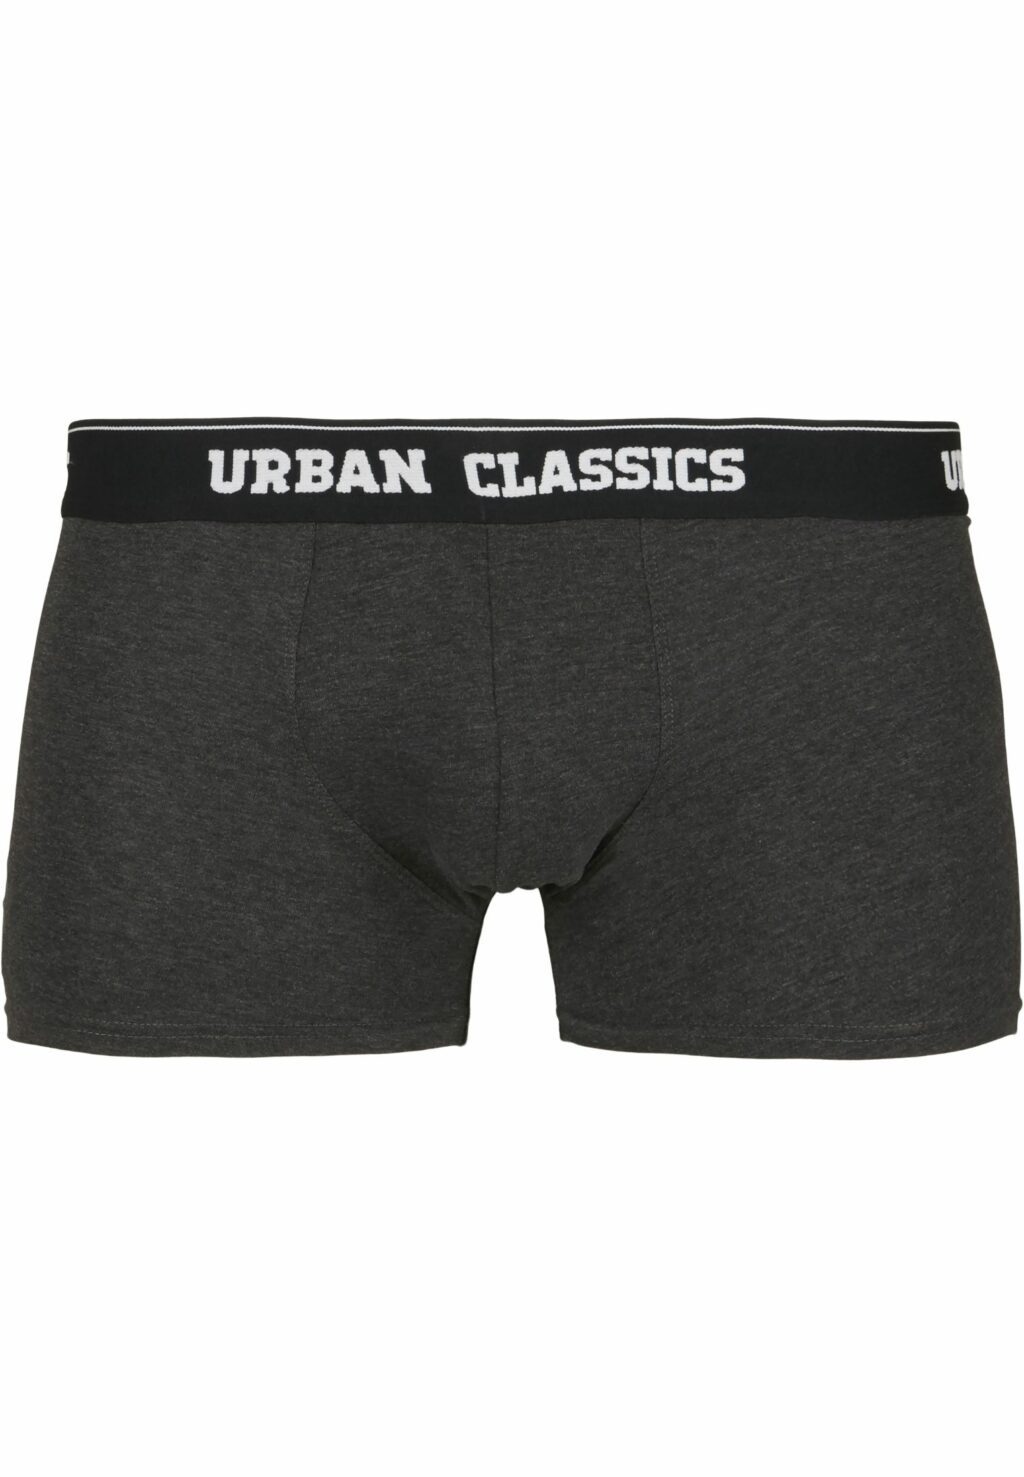 Urban Classics Boxer Shorts 5-Pack ban.aop+brand.aop+cha+blk+wht TB3846